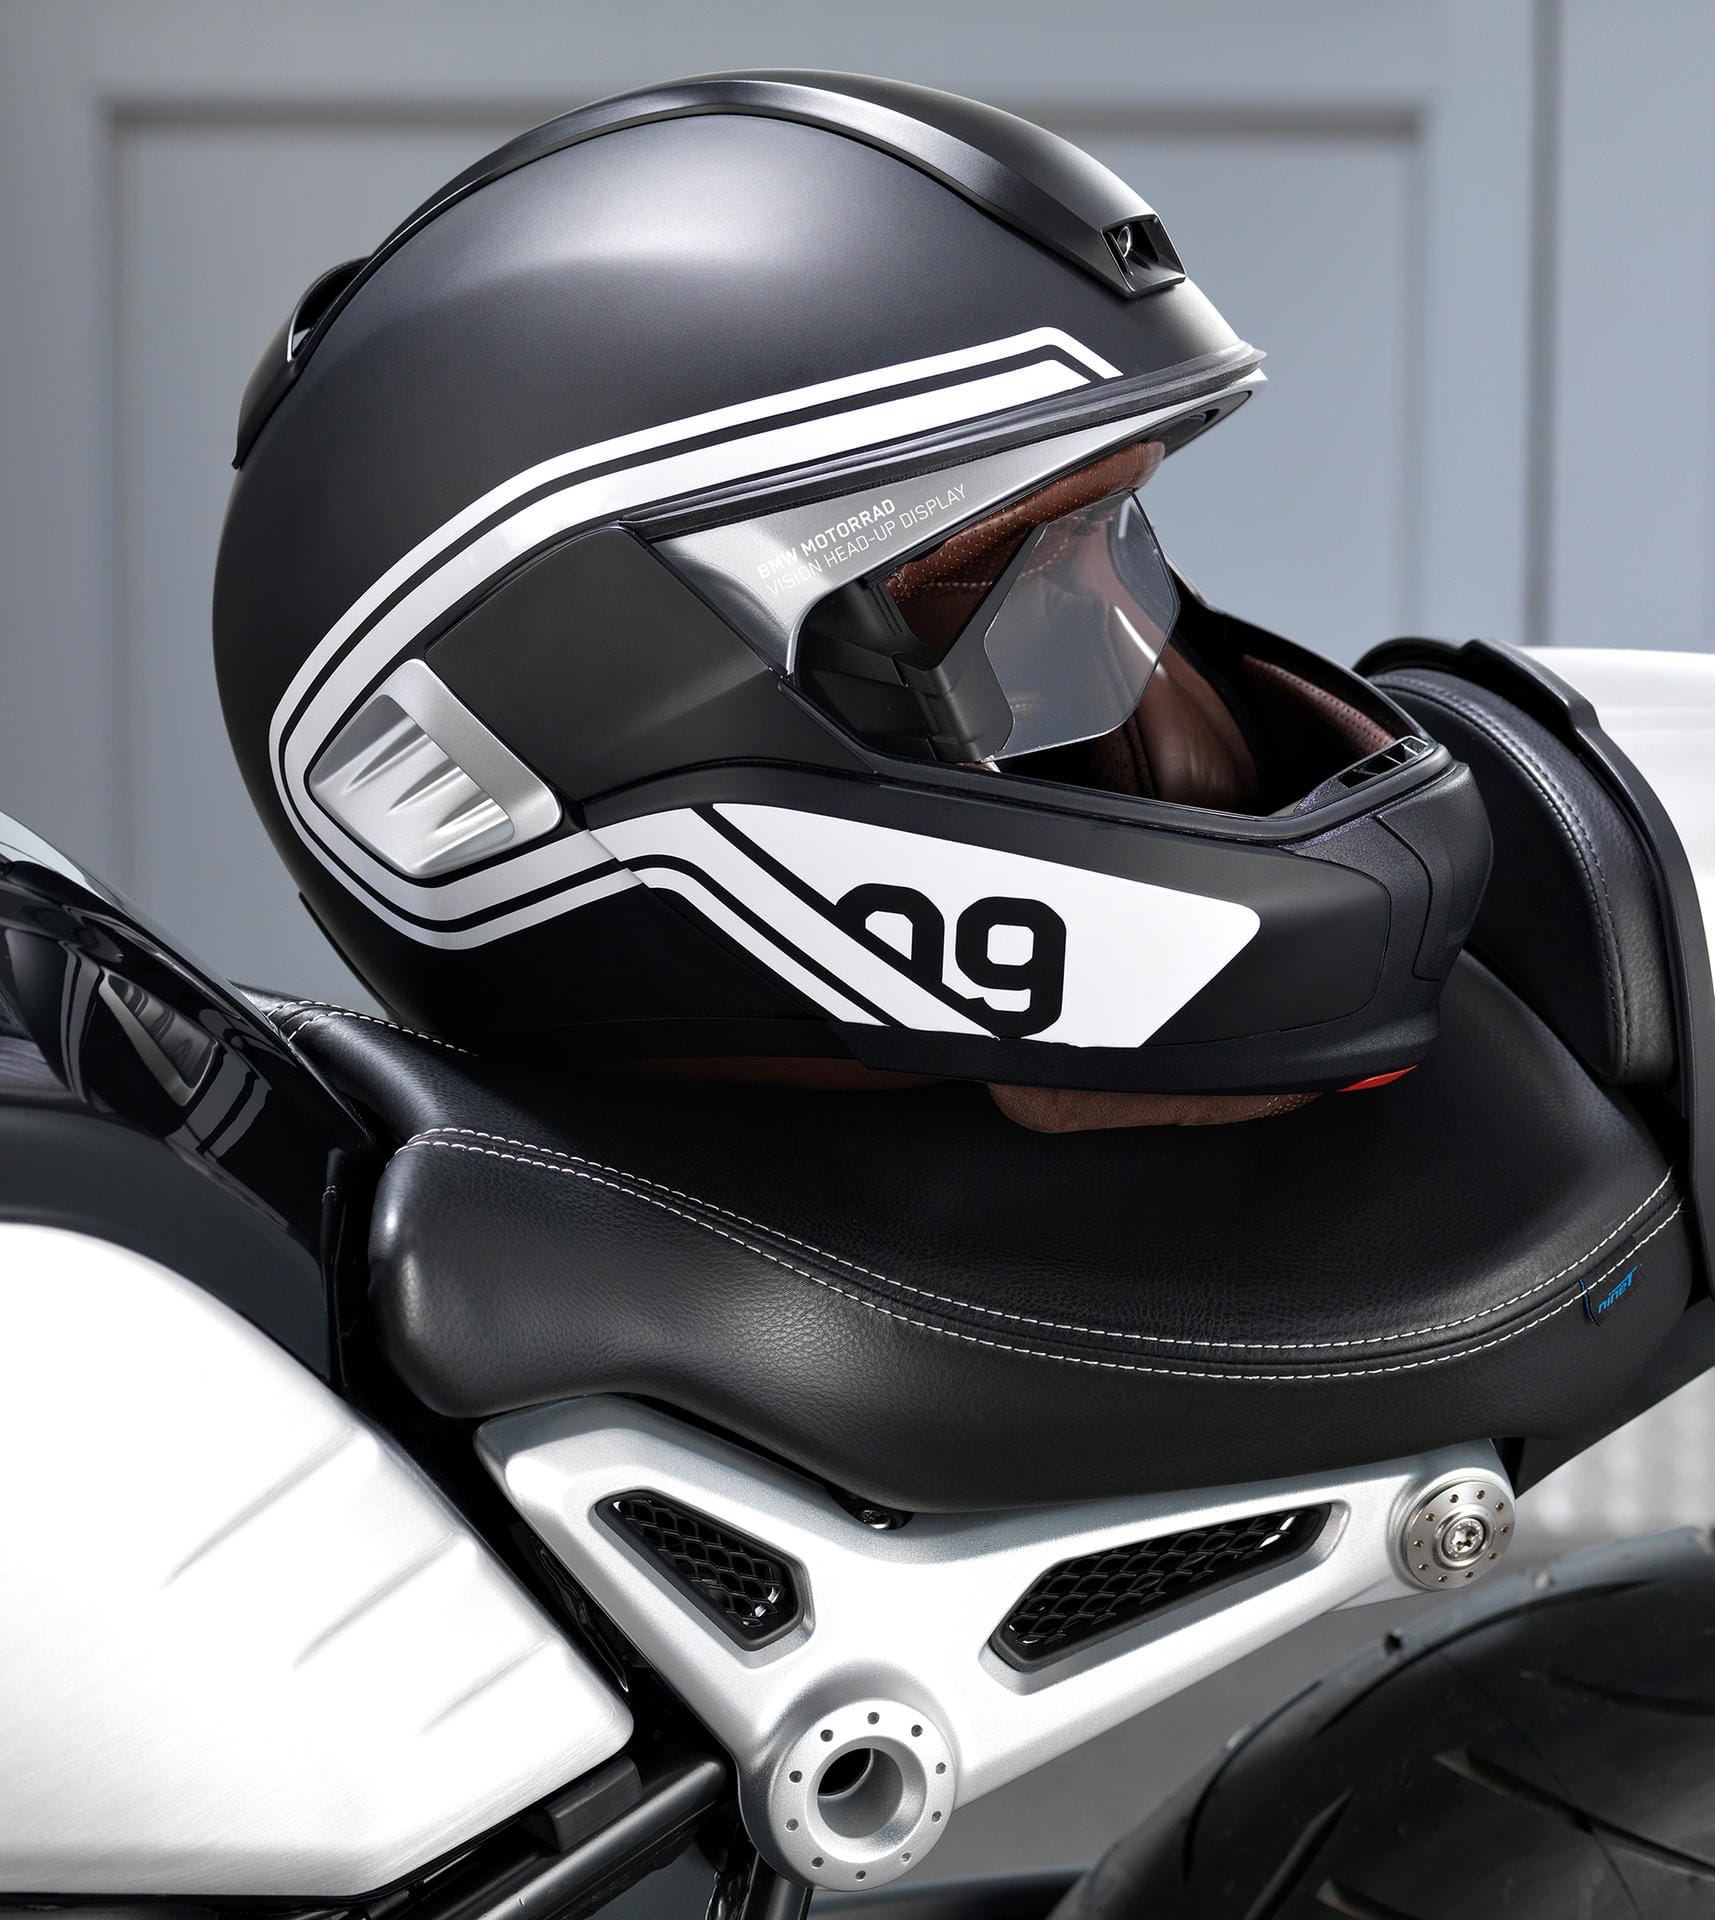 Außerdem ist es nach den Vorstellungen von BMW möglich, den Helm zusätzlich mit kleinen Kameras aufzurüsten.